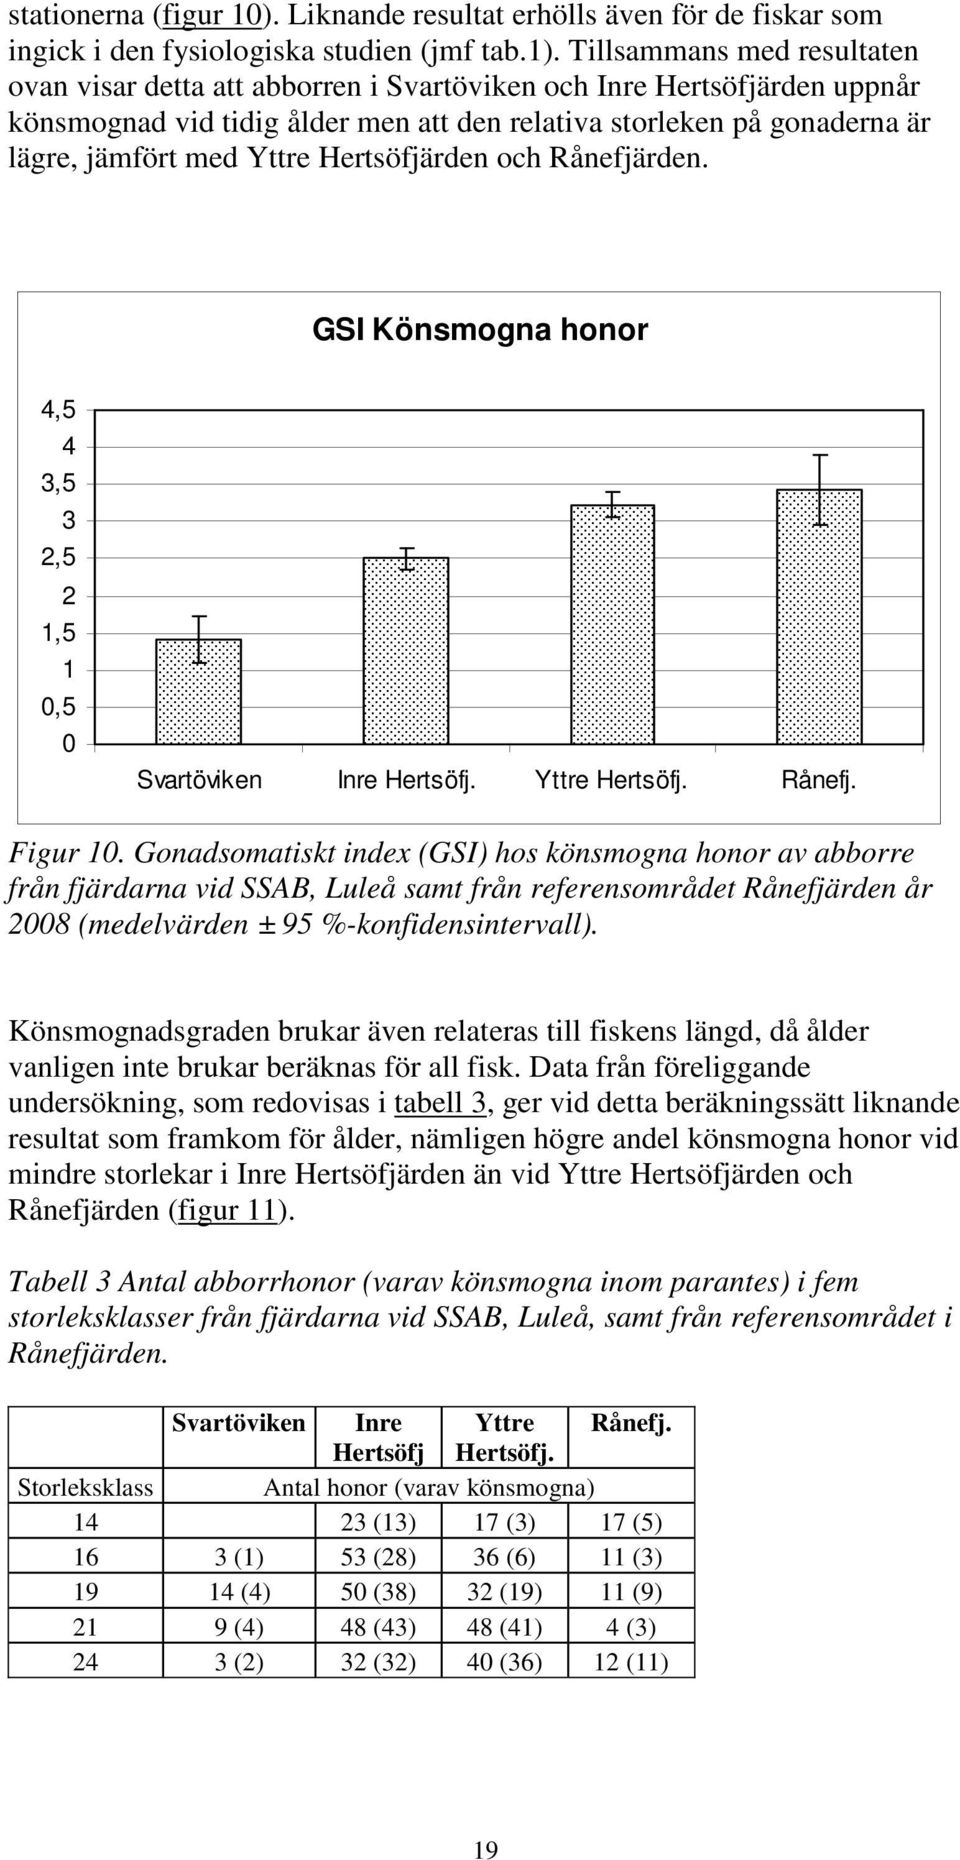 Tillsammans med resultaten ovan visar detta att abborren i Svartöviken och Inre Hertsöfjärden uppnår könsmognad vid tidig ålder men att den relativa storleken på gonaderna är lägre, jämfört med Yttre